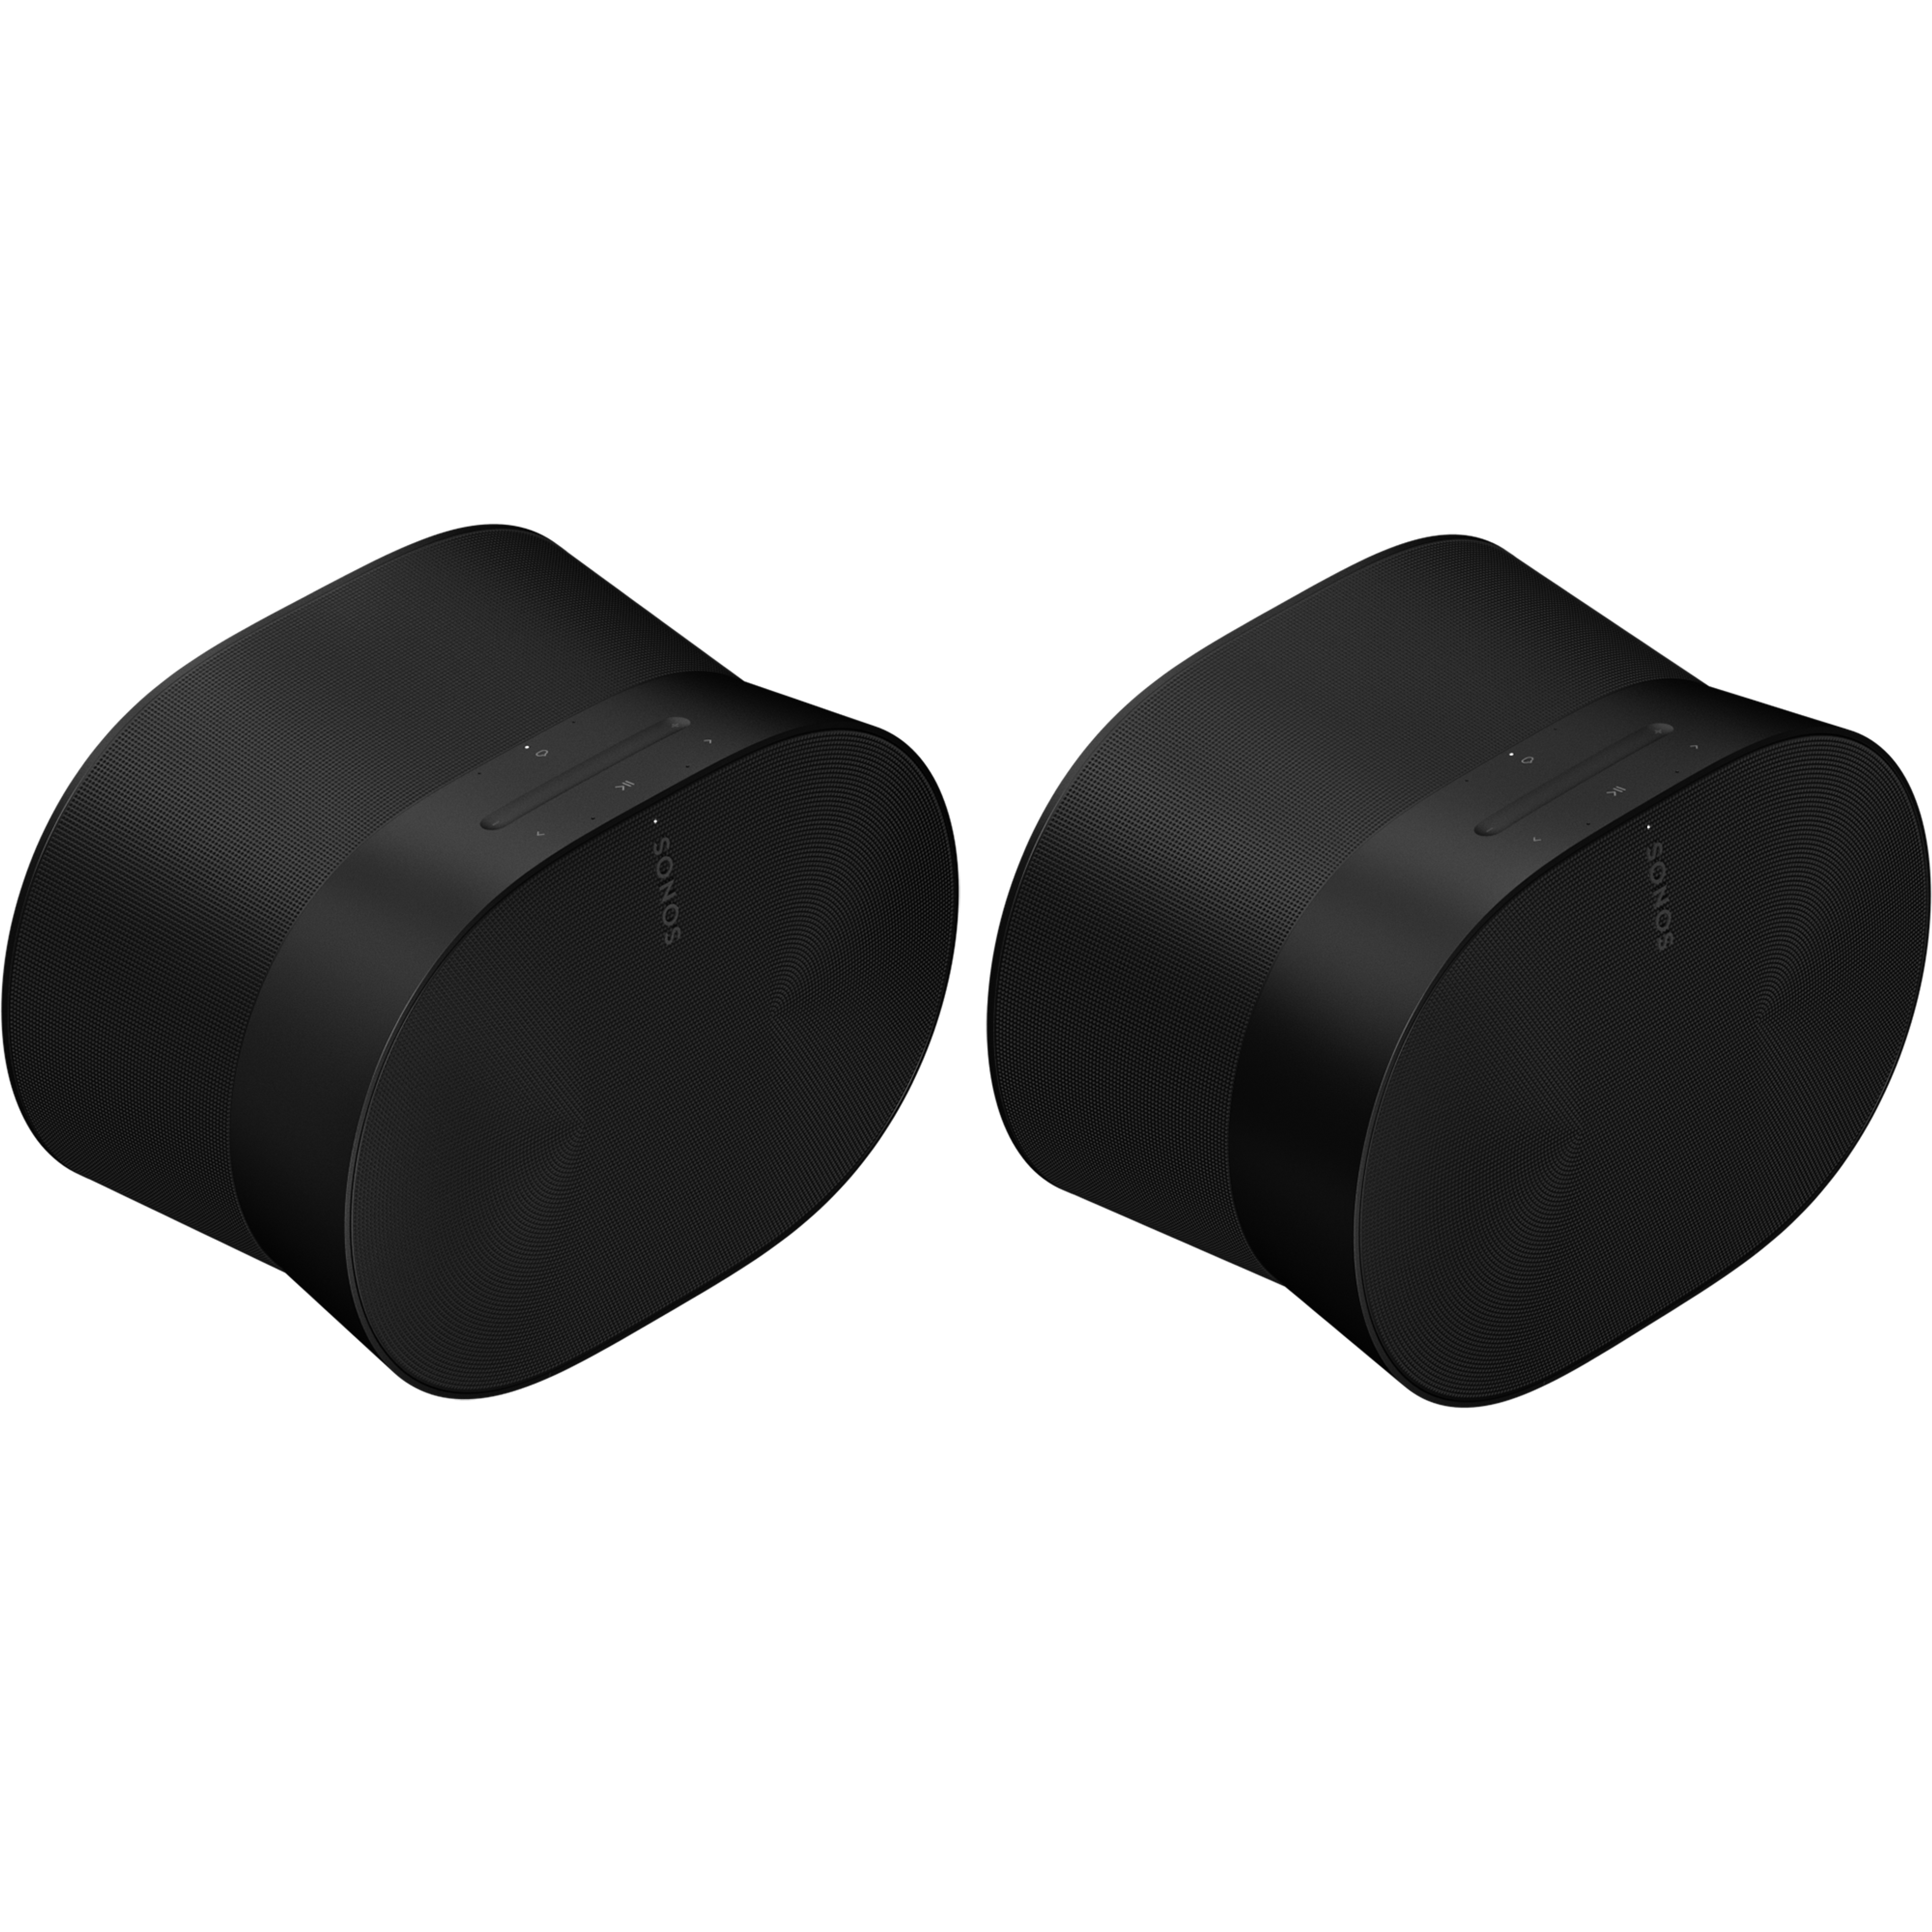 Image de deux haut-parleurs Sonos Era 300 noirs côte à côte, tournés de côté